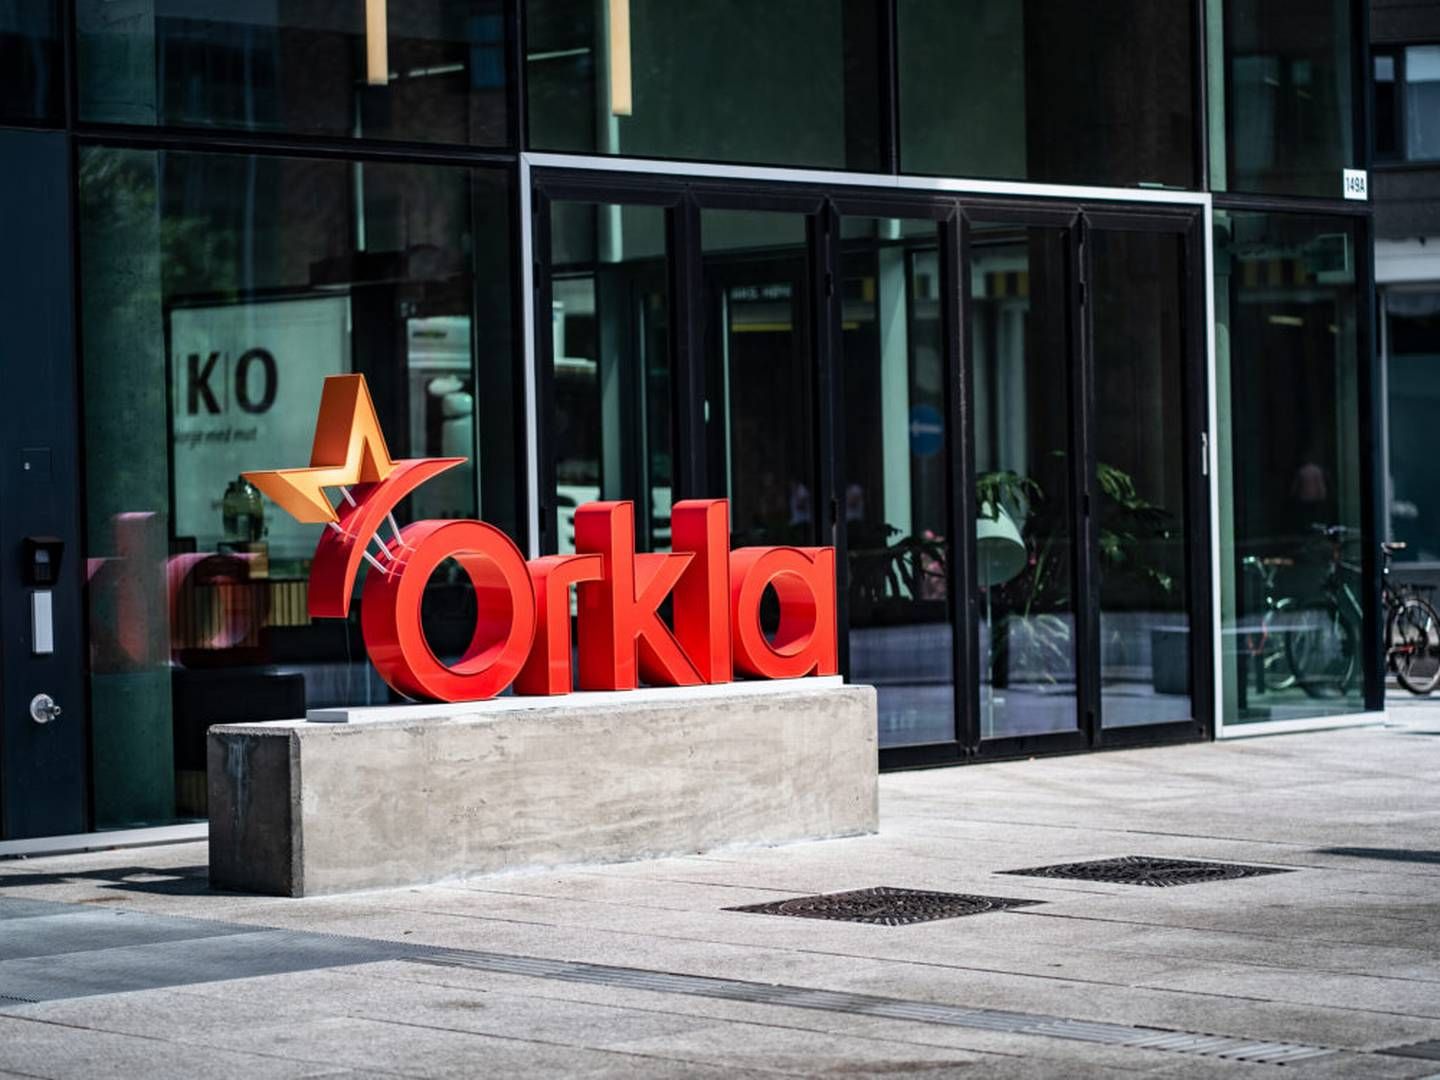 Konfektureafdelingen Orkla Confectionery & Snacks investerer 12,7 mio. kr. i svensk slikfabrik og har planer om at nå et mere internationalt marked. | Photo: PR/Orkla Foods